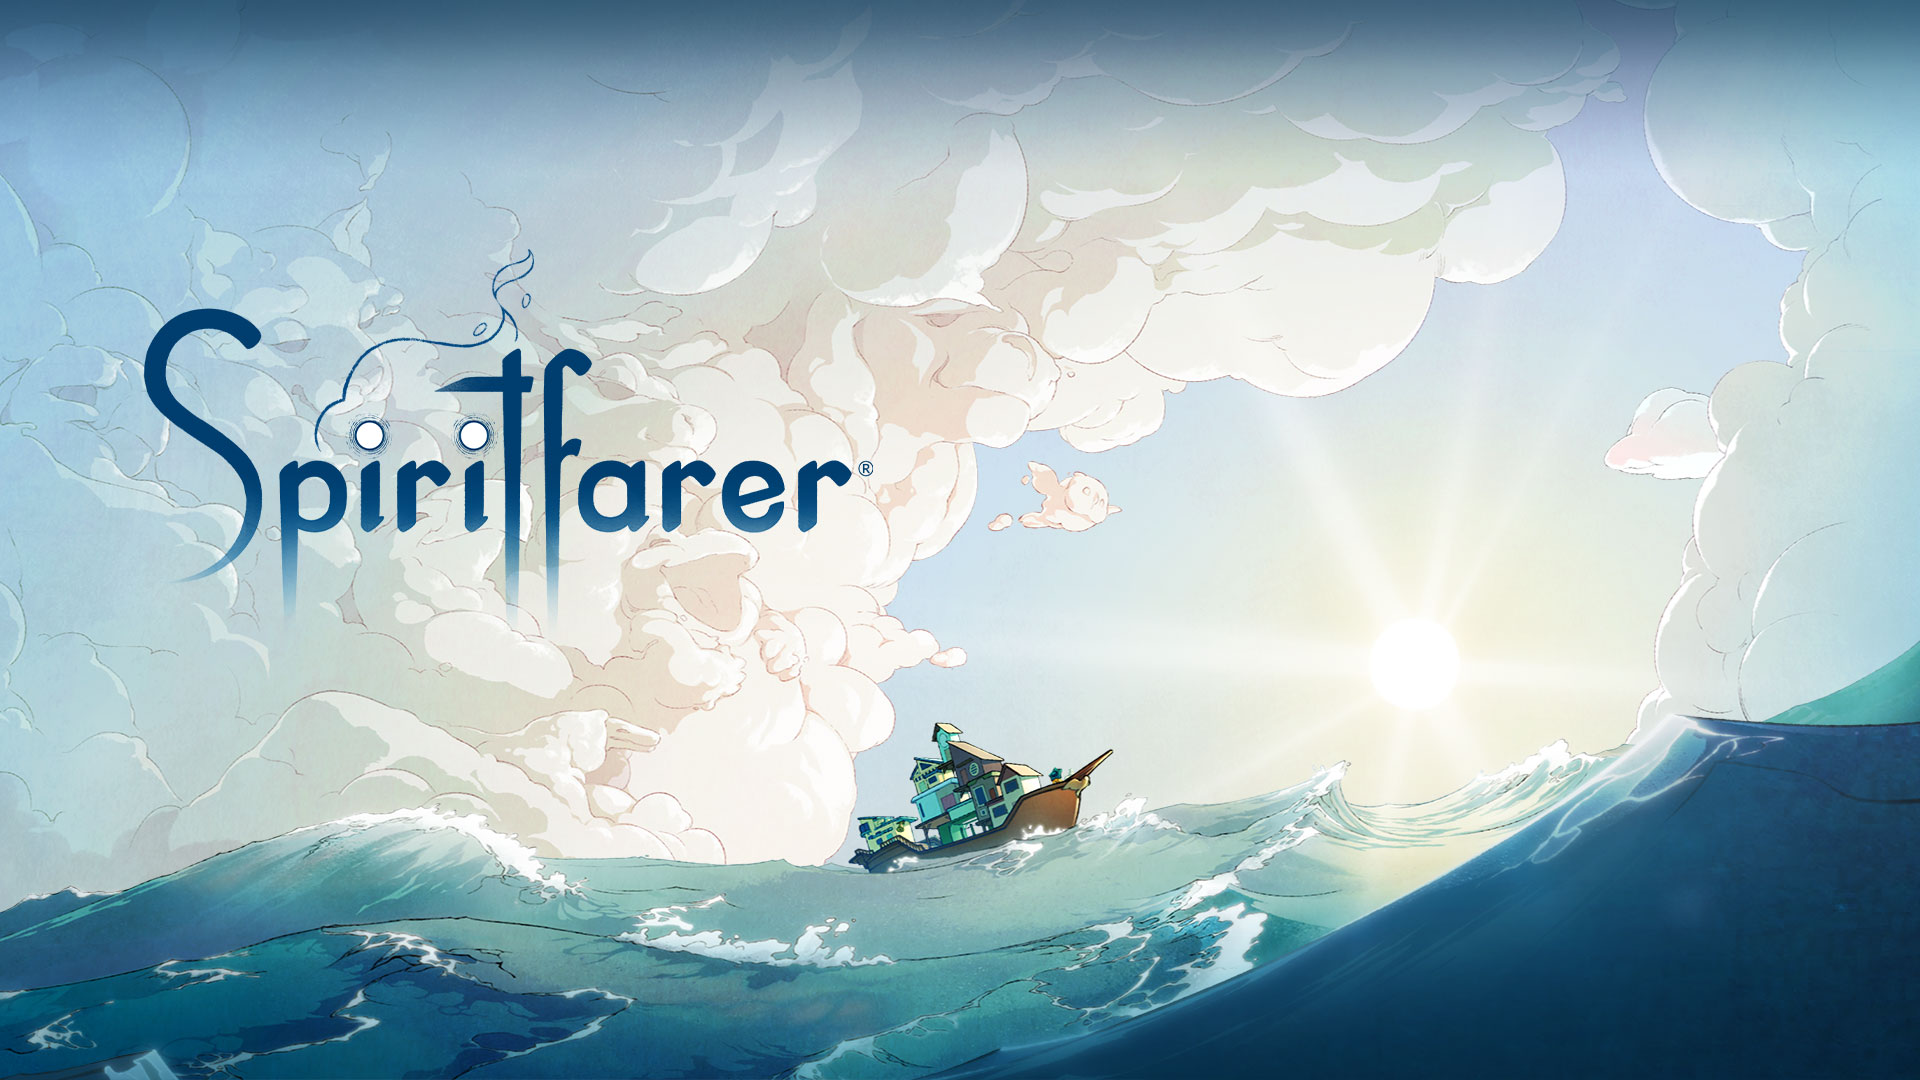 Λογότυπο Spiritfarer, βάρκα στο νερό με σύννεφα που σχηματίζουν διάφορα ζώα